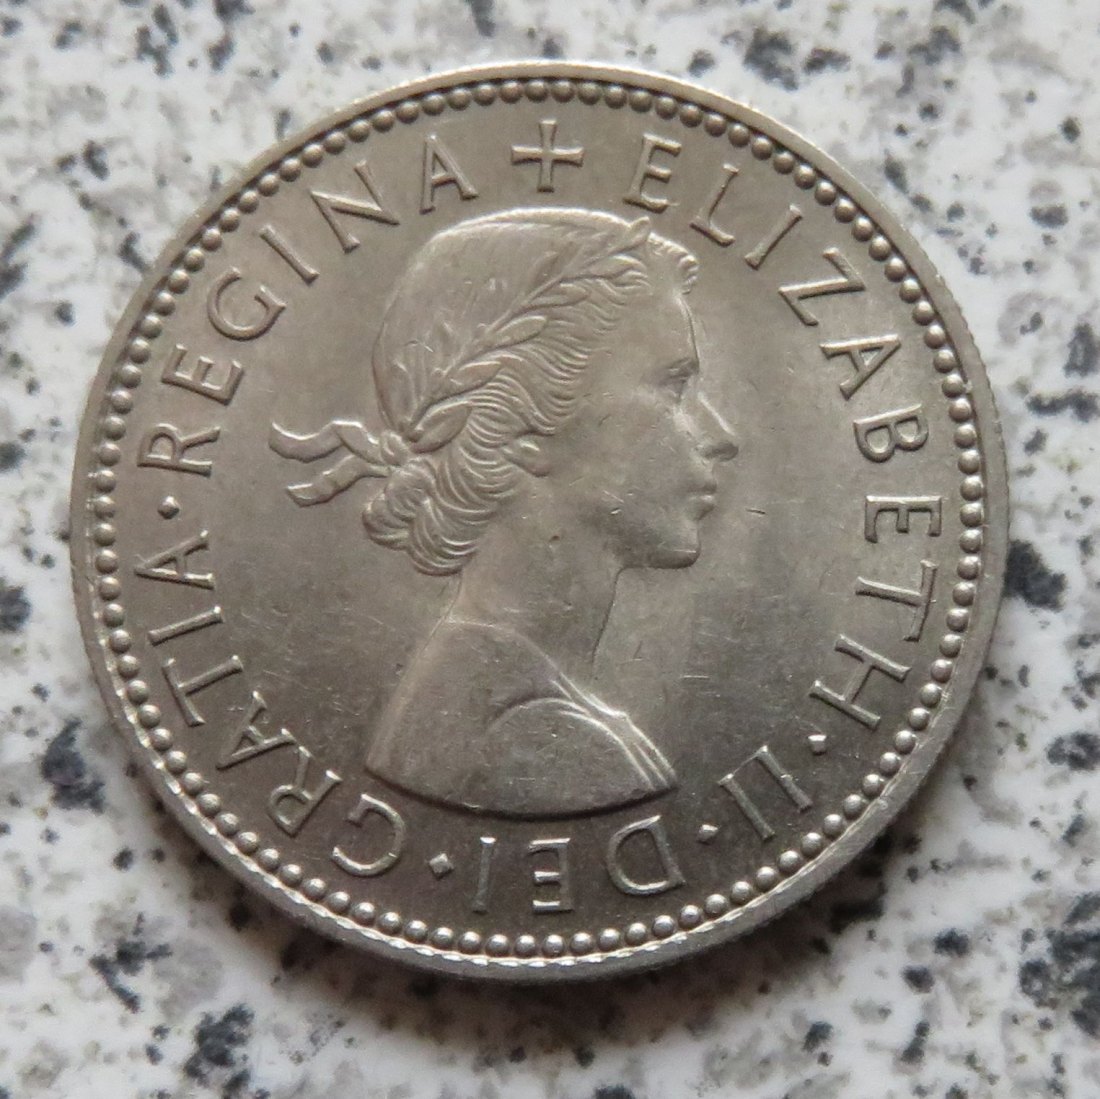  Großbritannien 1 Shilling 1958, Englisch, Erhaltung   